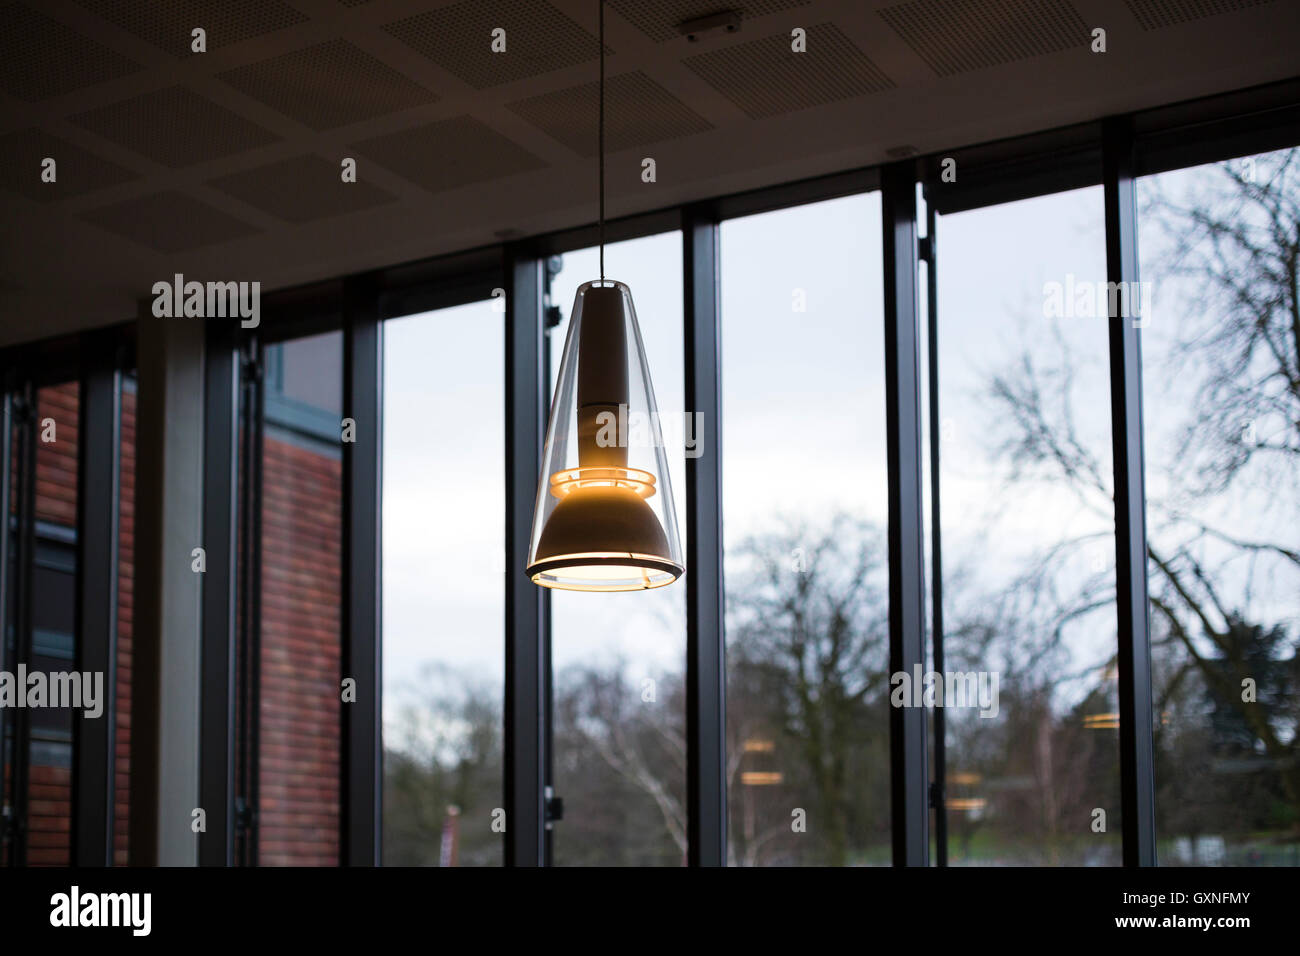 Luminaires suspendus avec l'intérieur de l'adn grand verre fenêtre derrière comme dans une salle de l'environnement. Banque D'Images